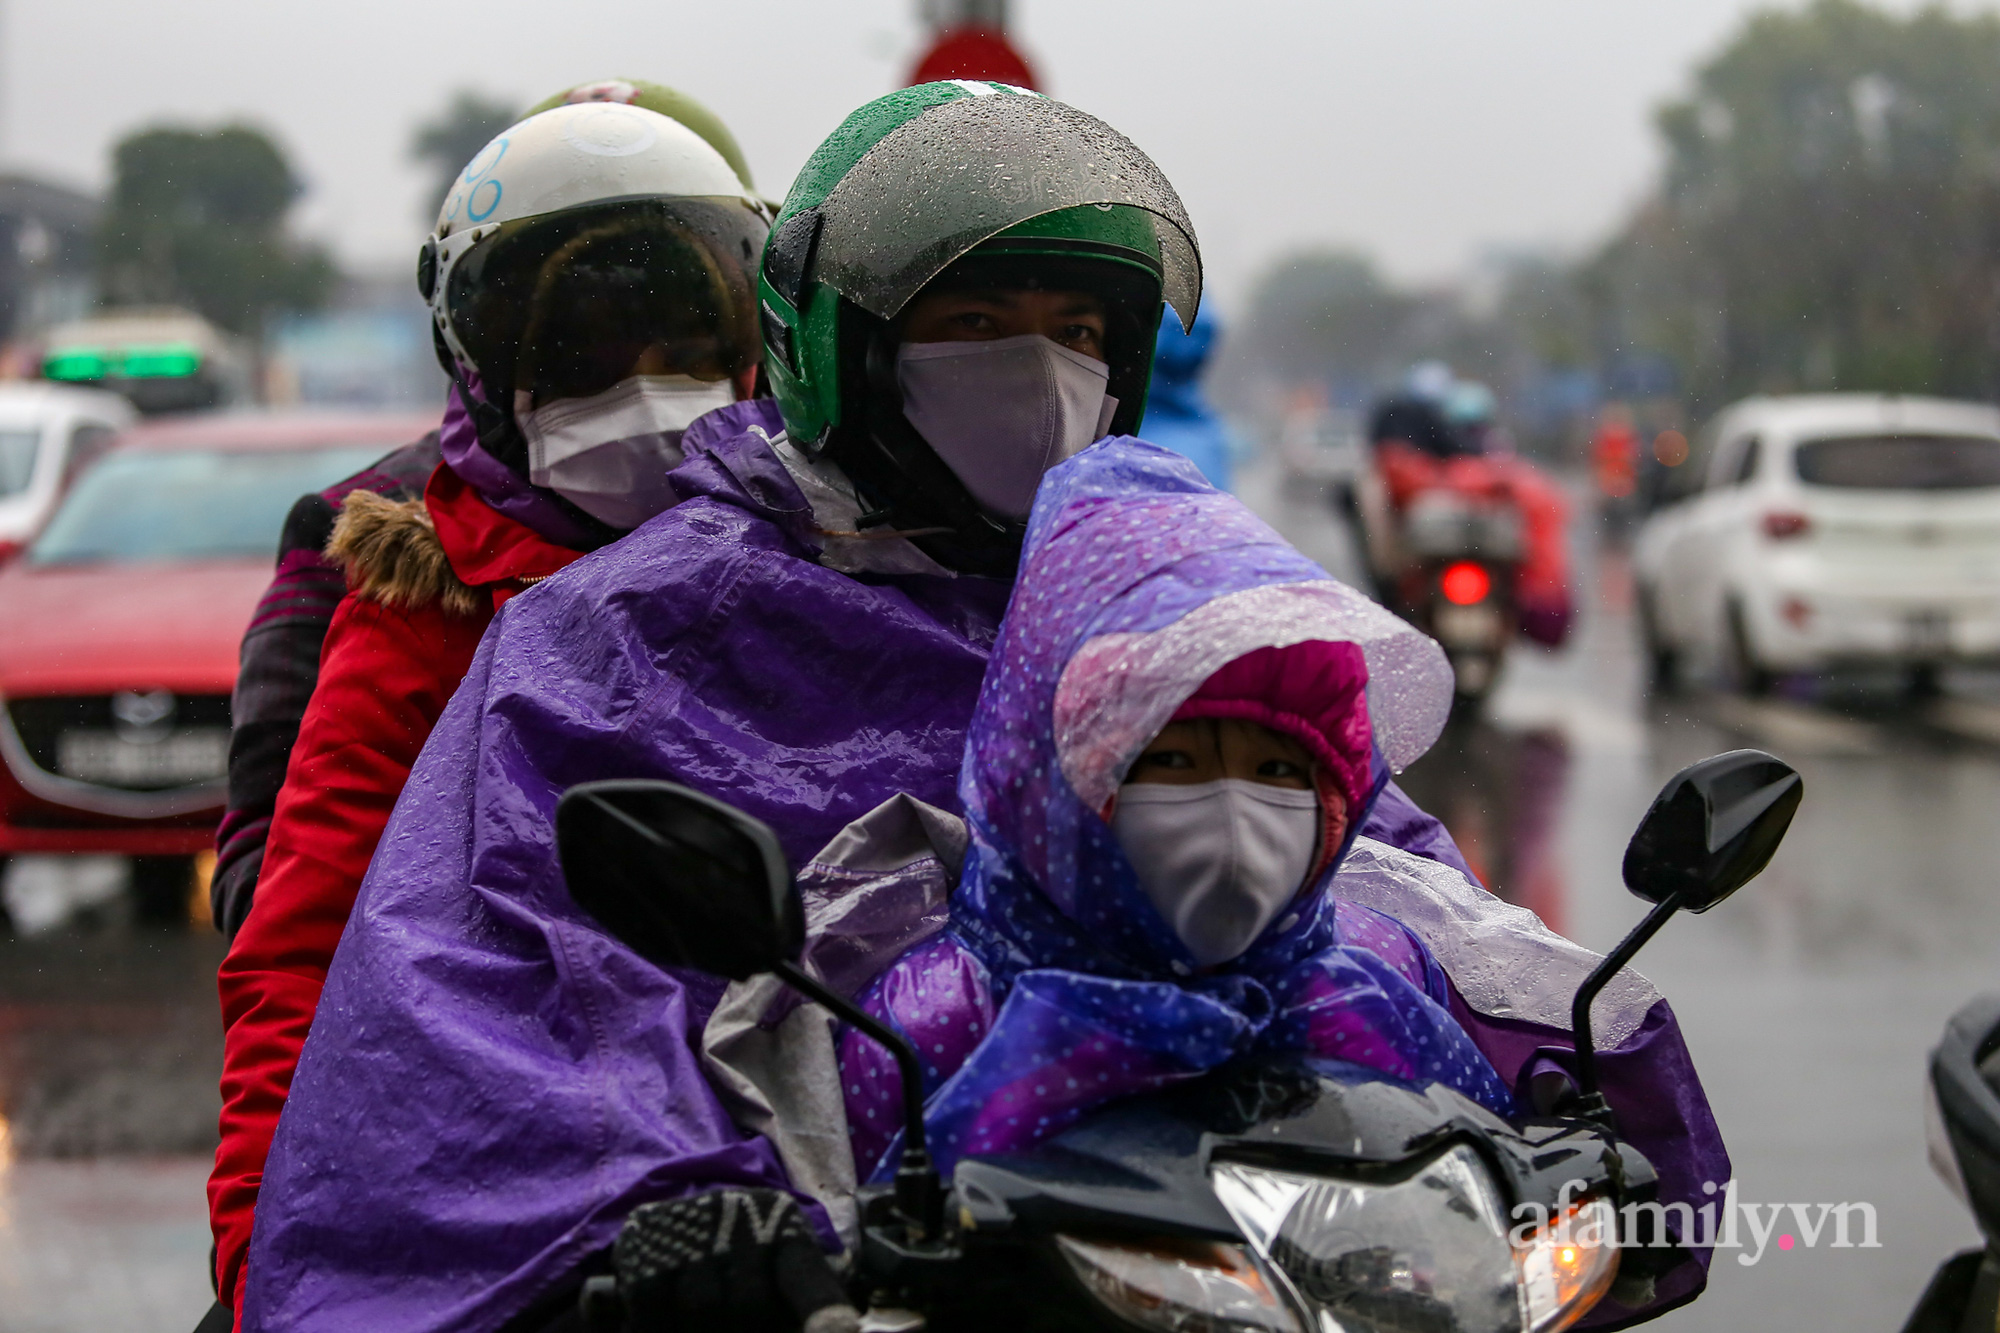 Người dân đội mưa rét trở lại Hà Nội sau kỳ nghỉ Tết, khu vực cửa ngõ ùn tắc-4